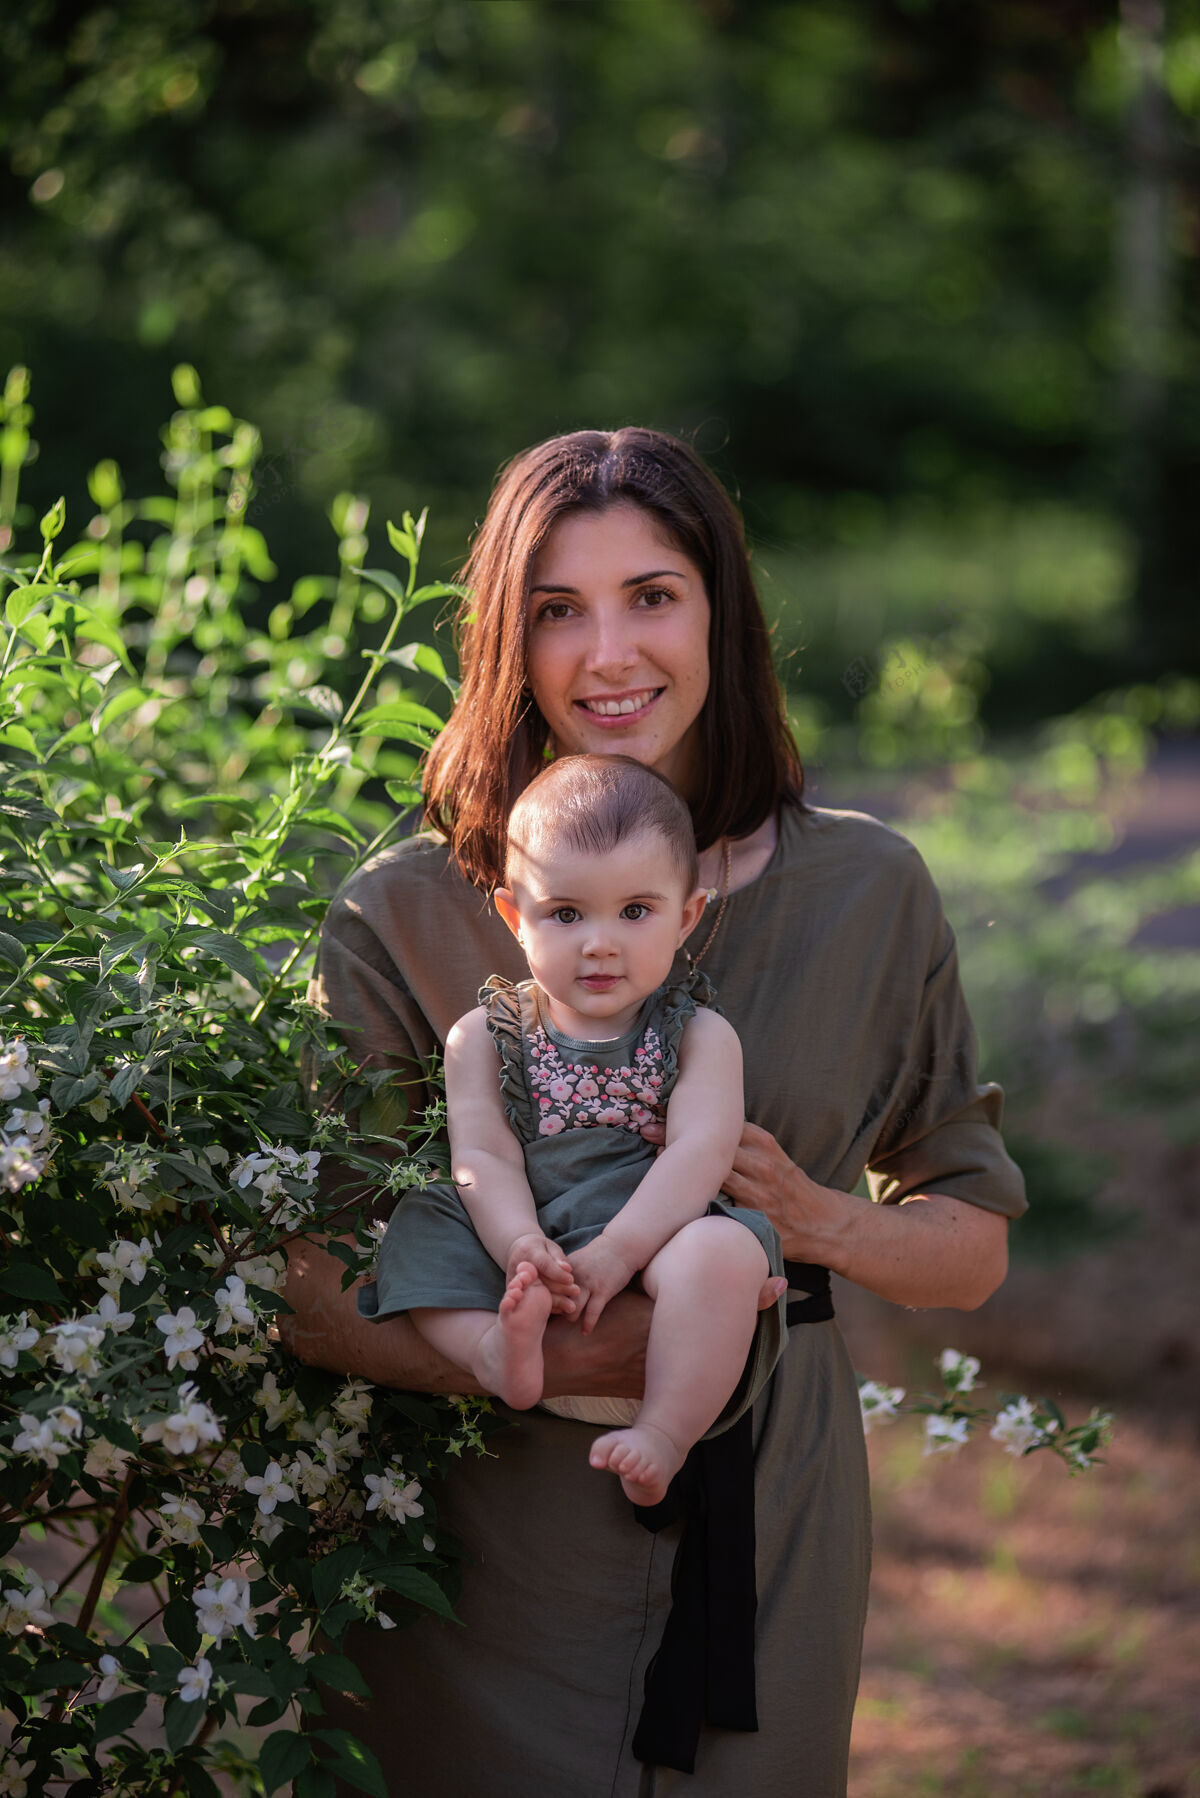 茉莉花一个年轻的女人怀里抱着一个小婴儿一位美丽的母亲和她的女儿在茉莉花丛旁的绿色公园里散步可爱小草宝宝